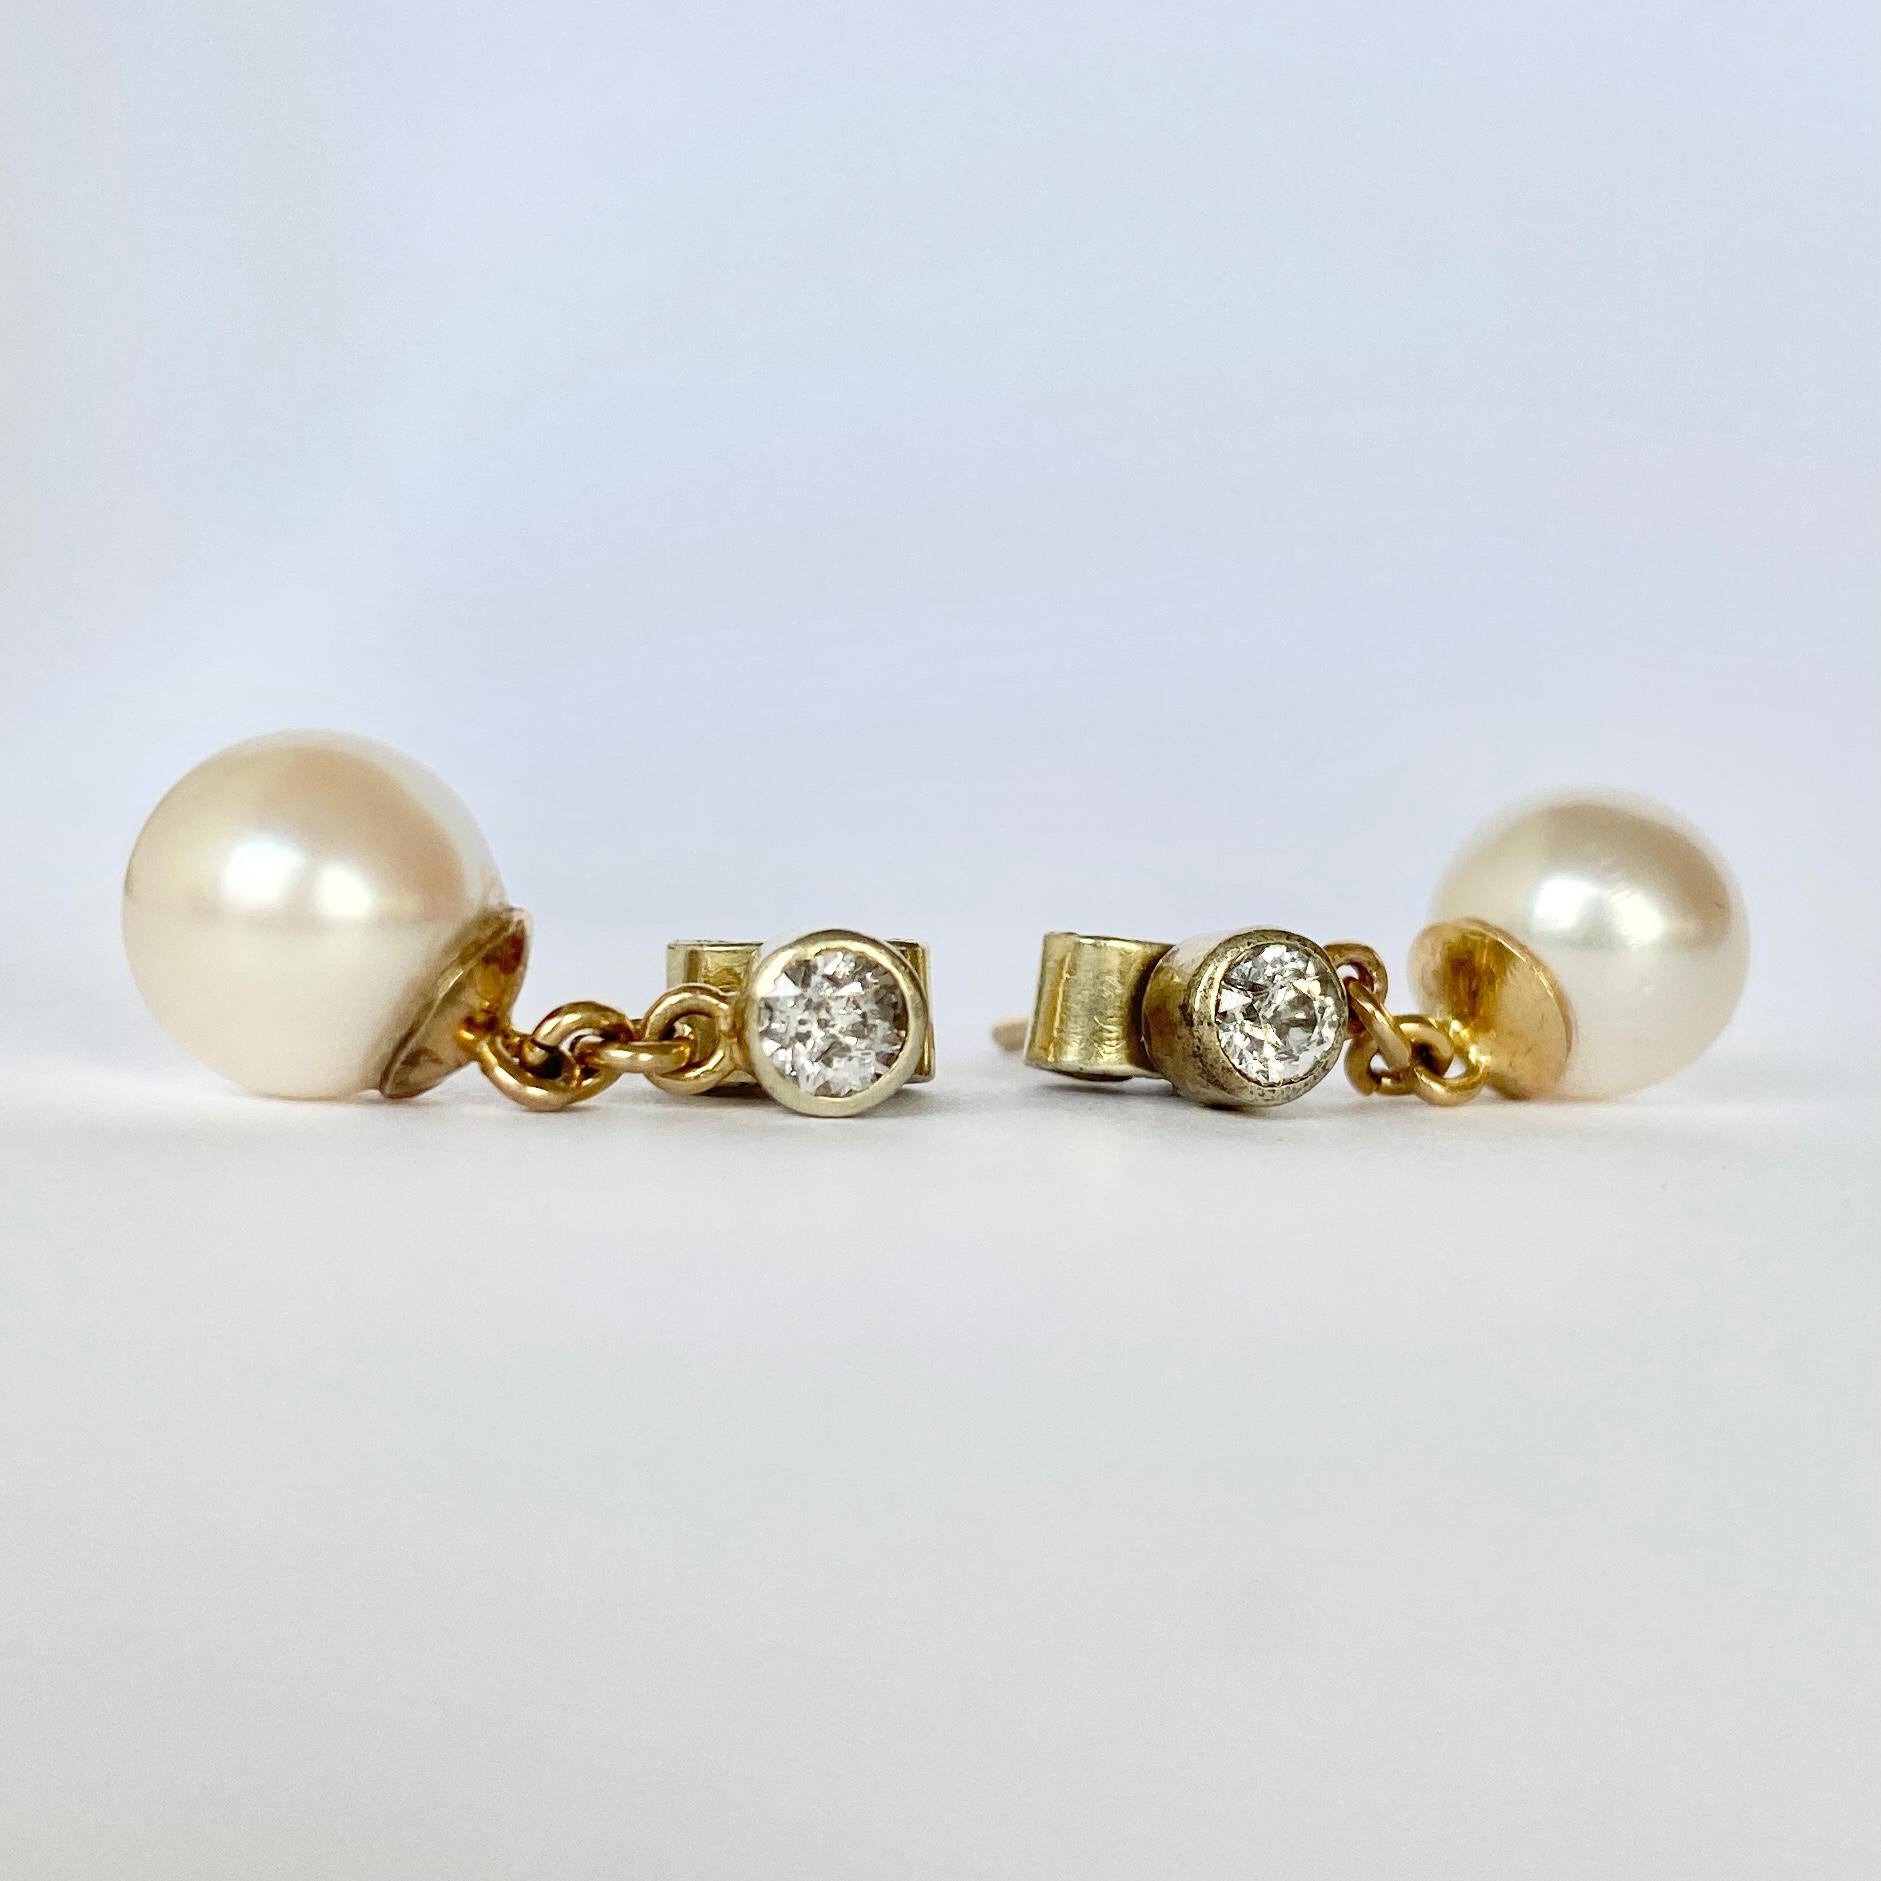 Diese wunderschönen Perlenohrringe sind auch mit Diamanten besetzt, die für ein wenig Glanz sorgen! Die Perlen sind hell und glatt und die Diamanten messen 25pts pro Ohrring. Sie werden in der Originalverpackung von Burlington Arcade geliefert.